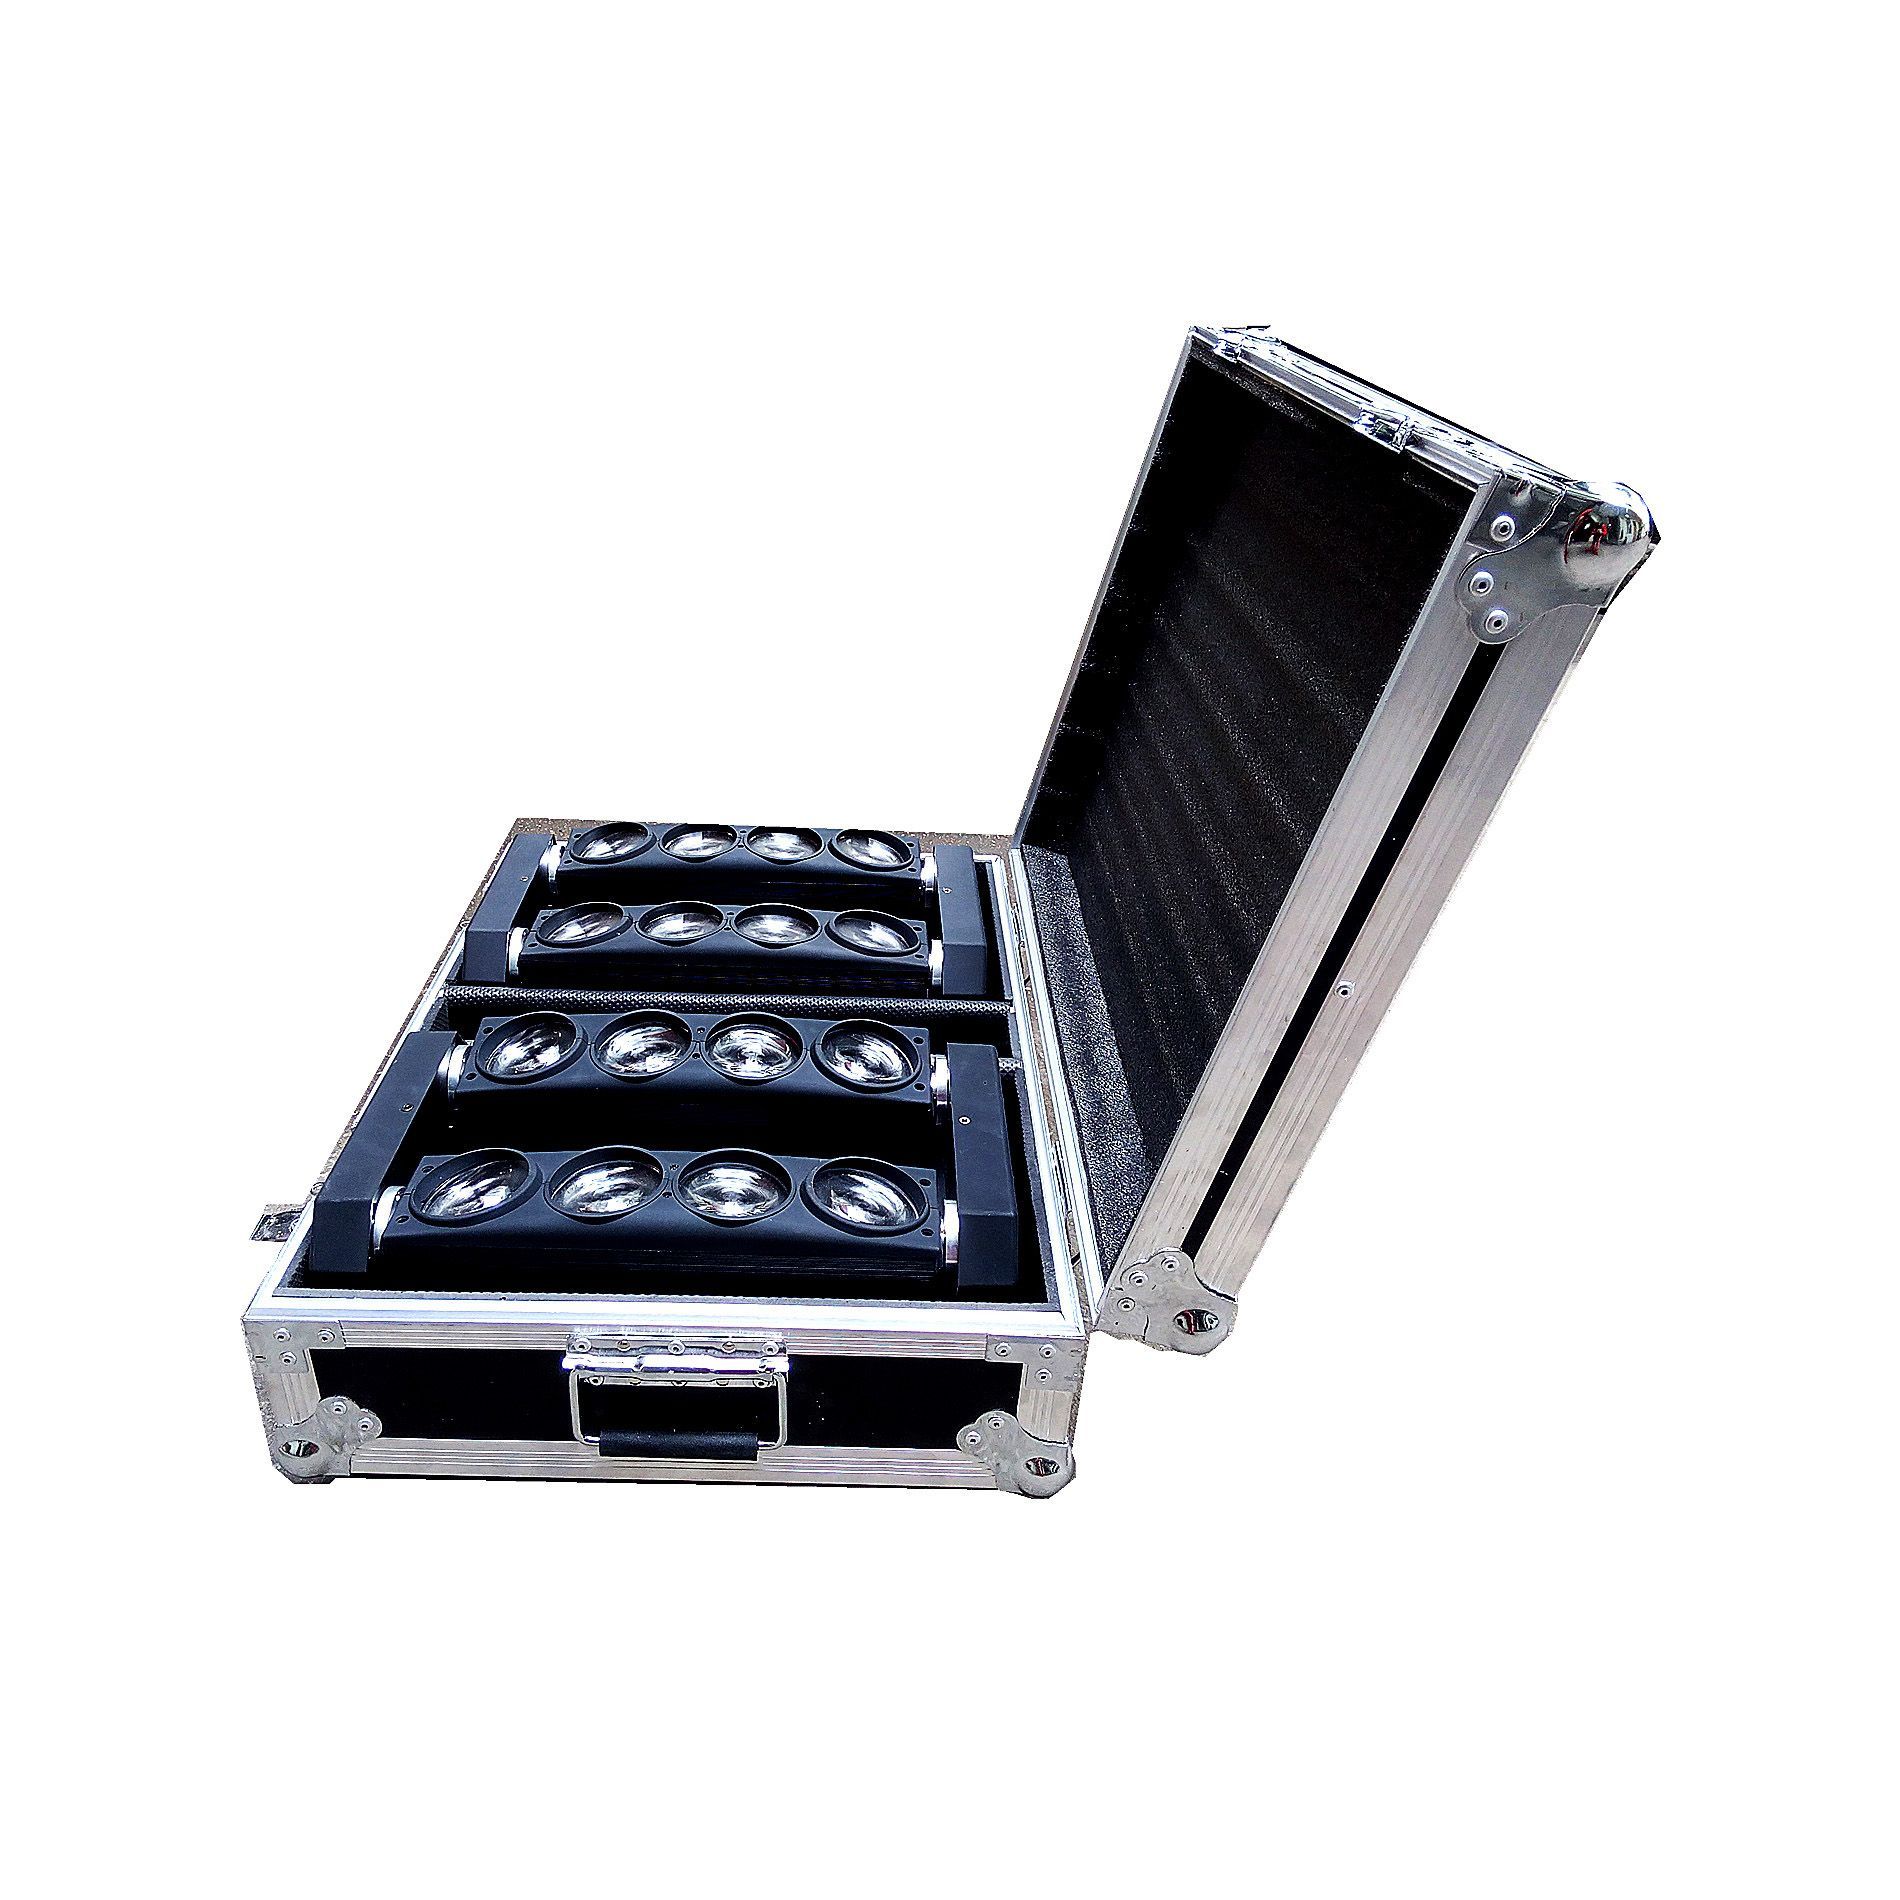 Power Acoustics Flight Case Pour Spider Led - Bag & flightcase for lighting equipment - Variation 1